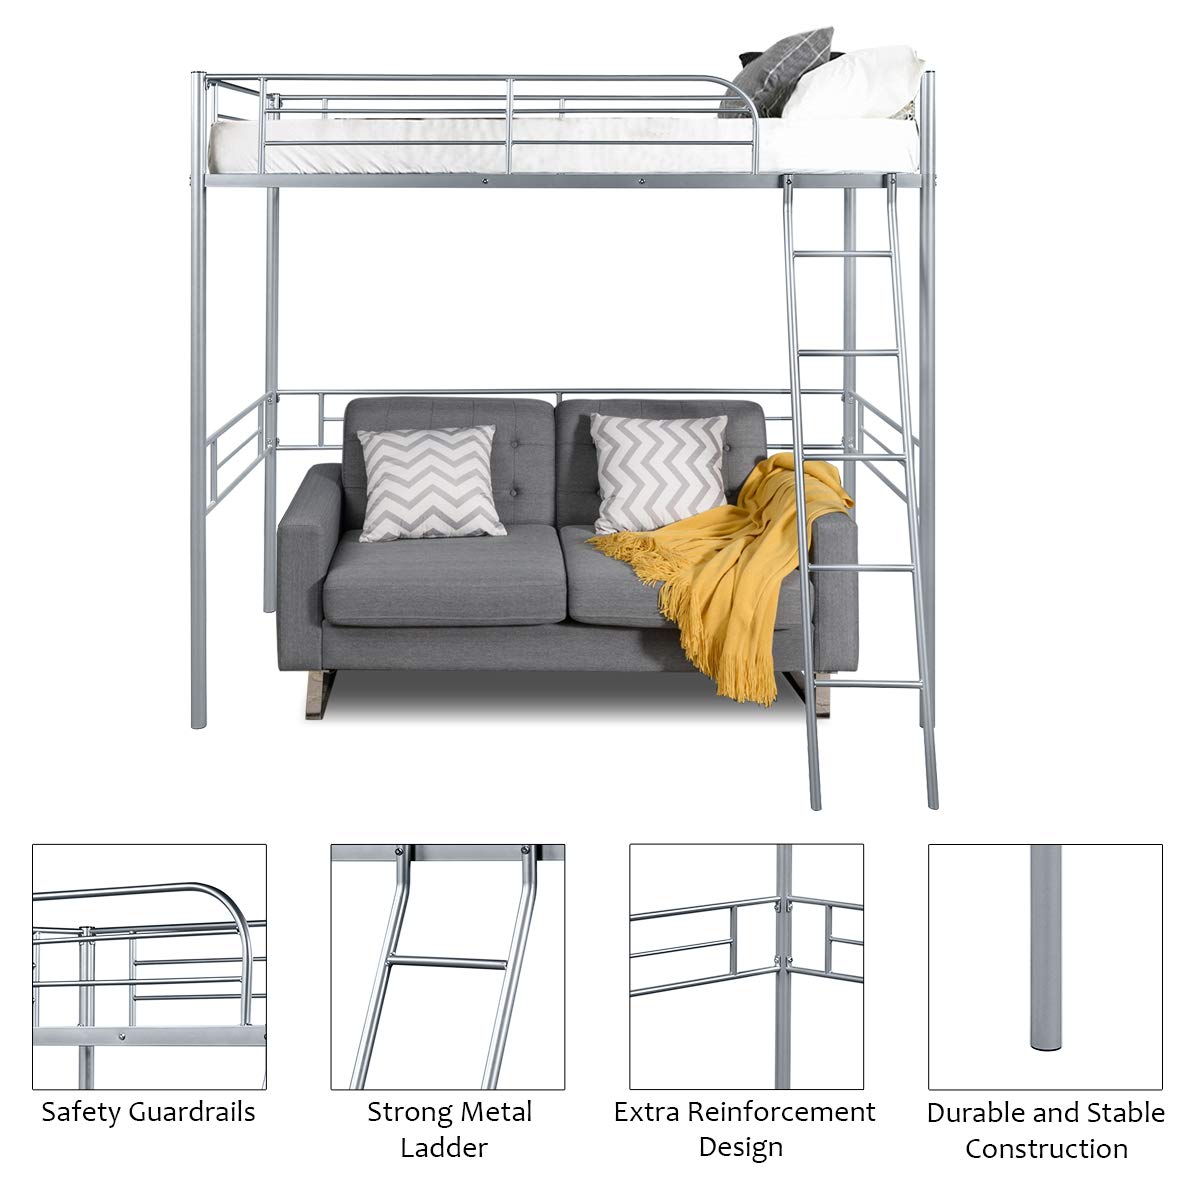 Giantex Heavy Duty Twin Loft Bed with Ladder